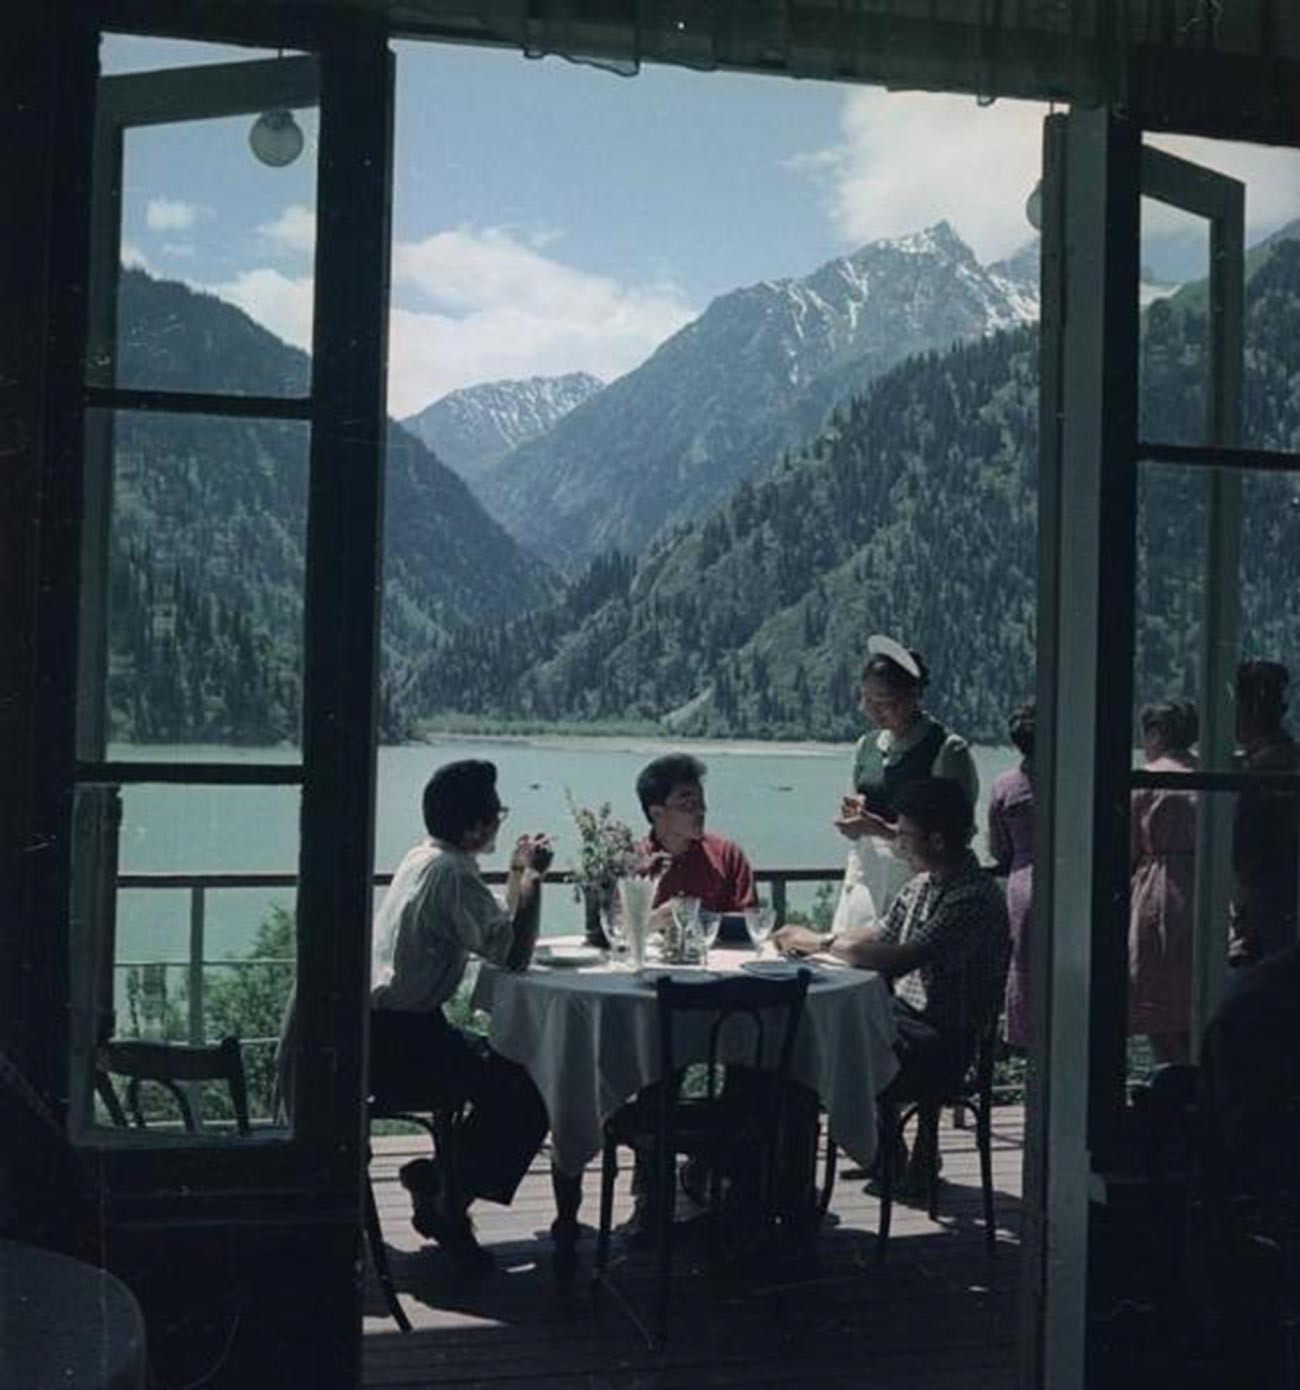 イシク・クル湖畔のレストランのバルコニー。カザフ・ソビエト社会主義共和国。1961年